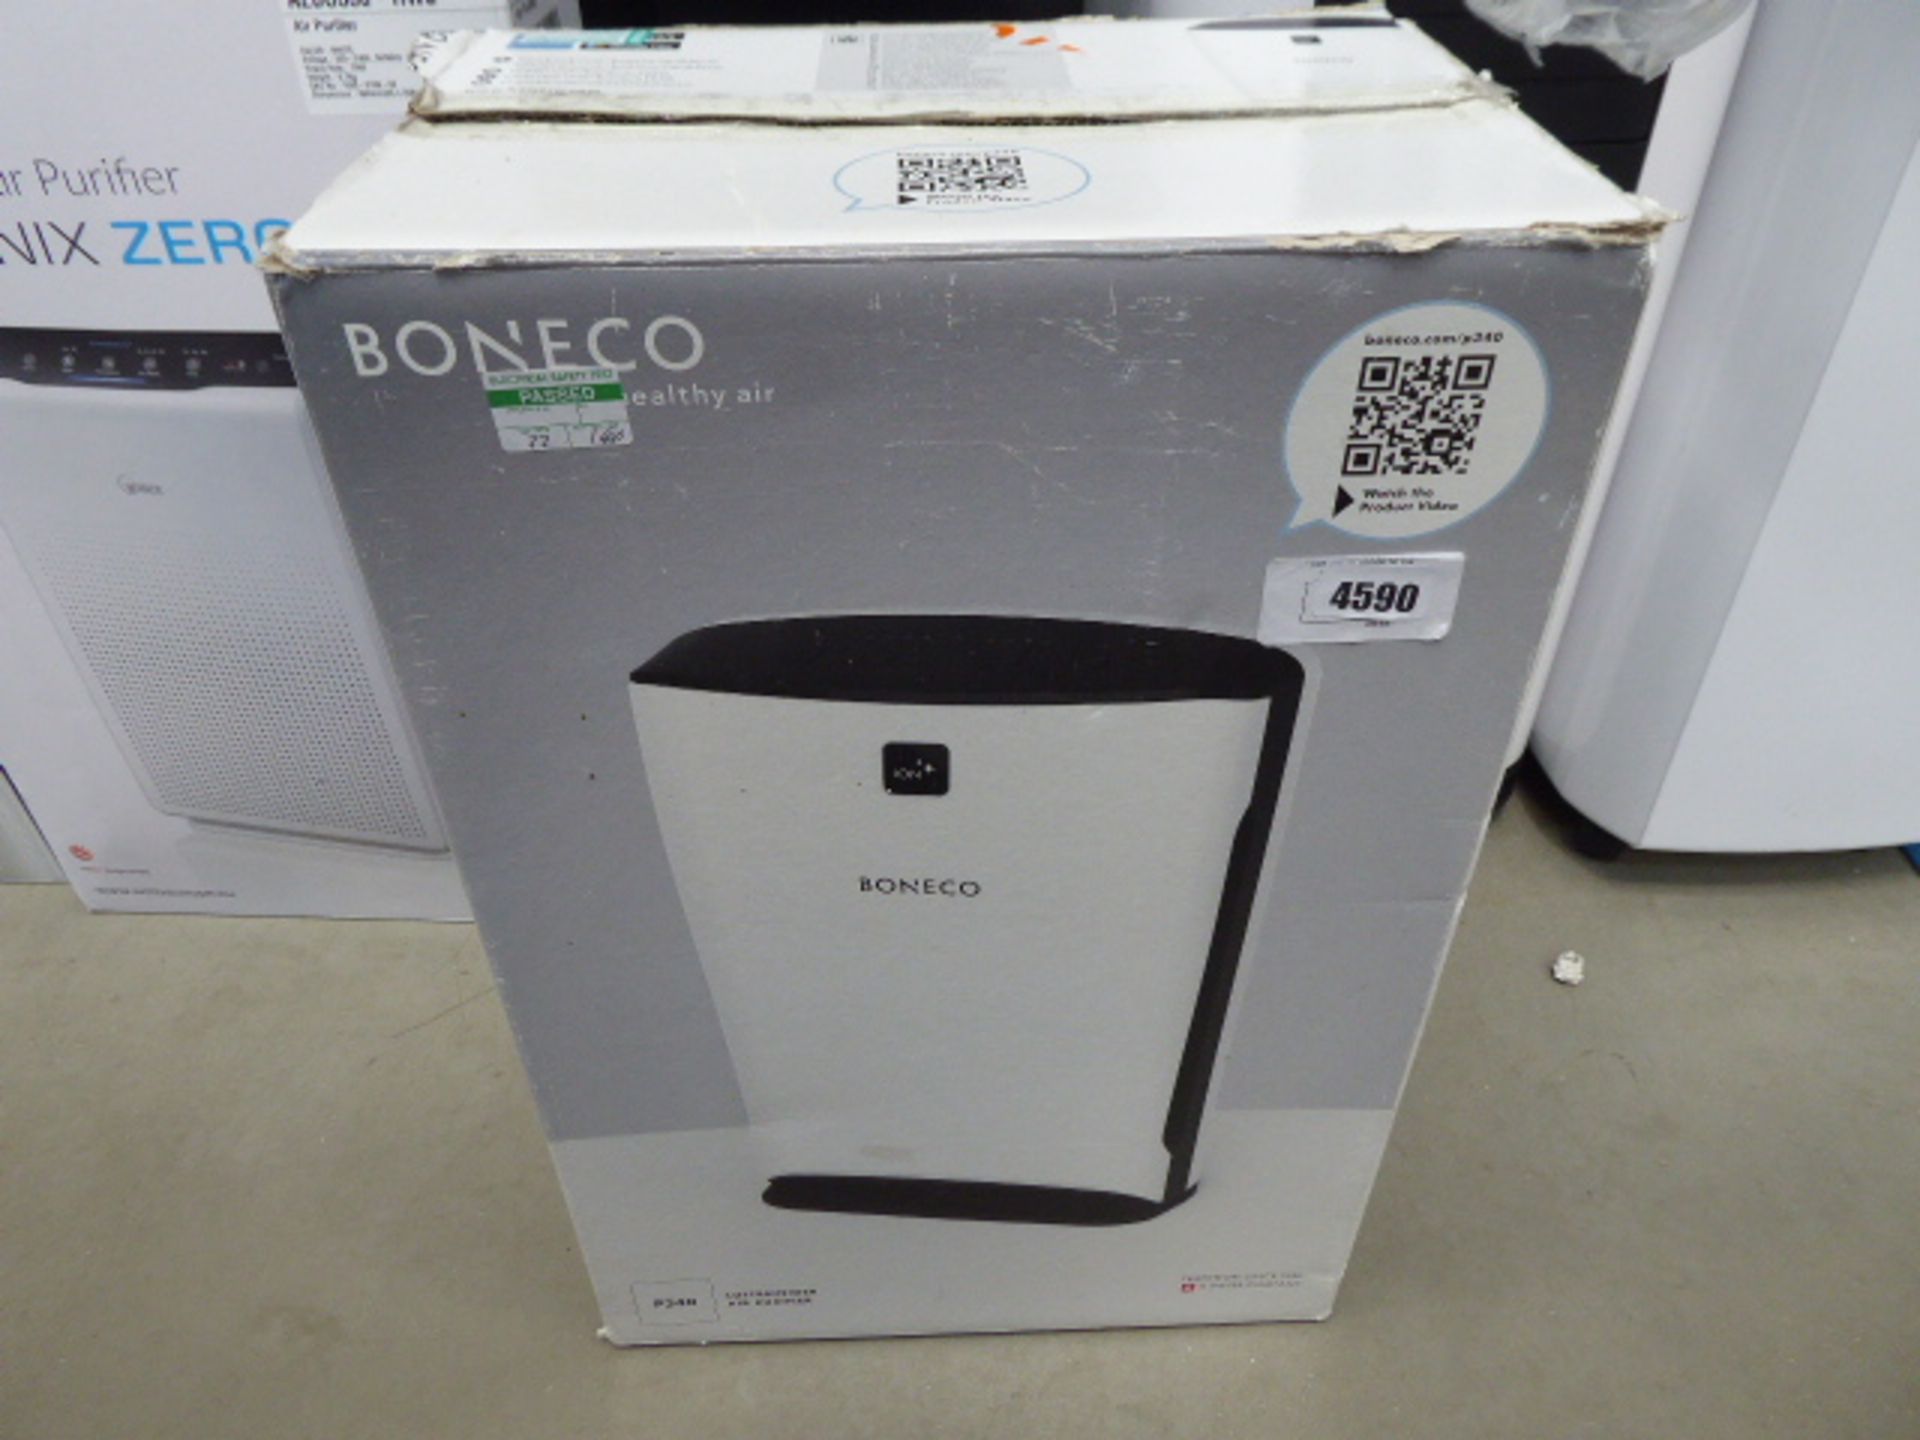 Boneco boxed air purifier